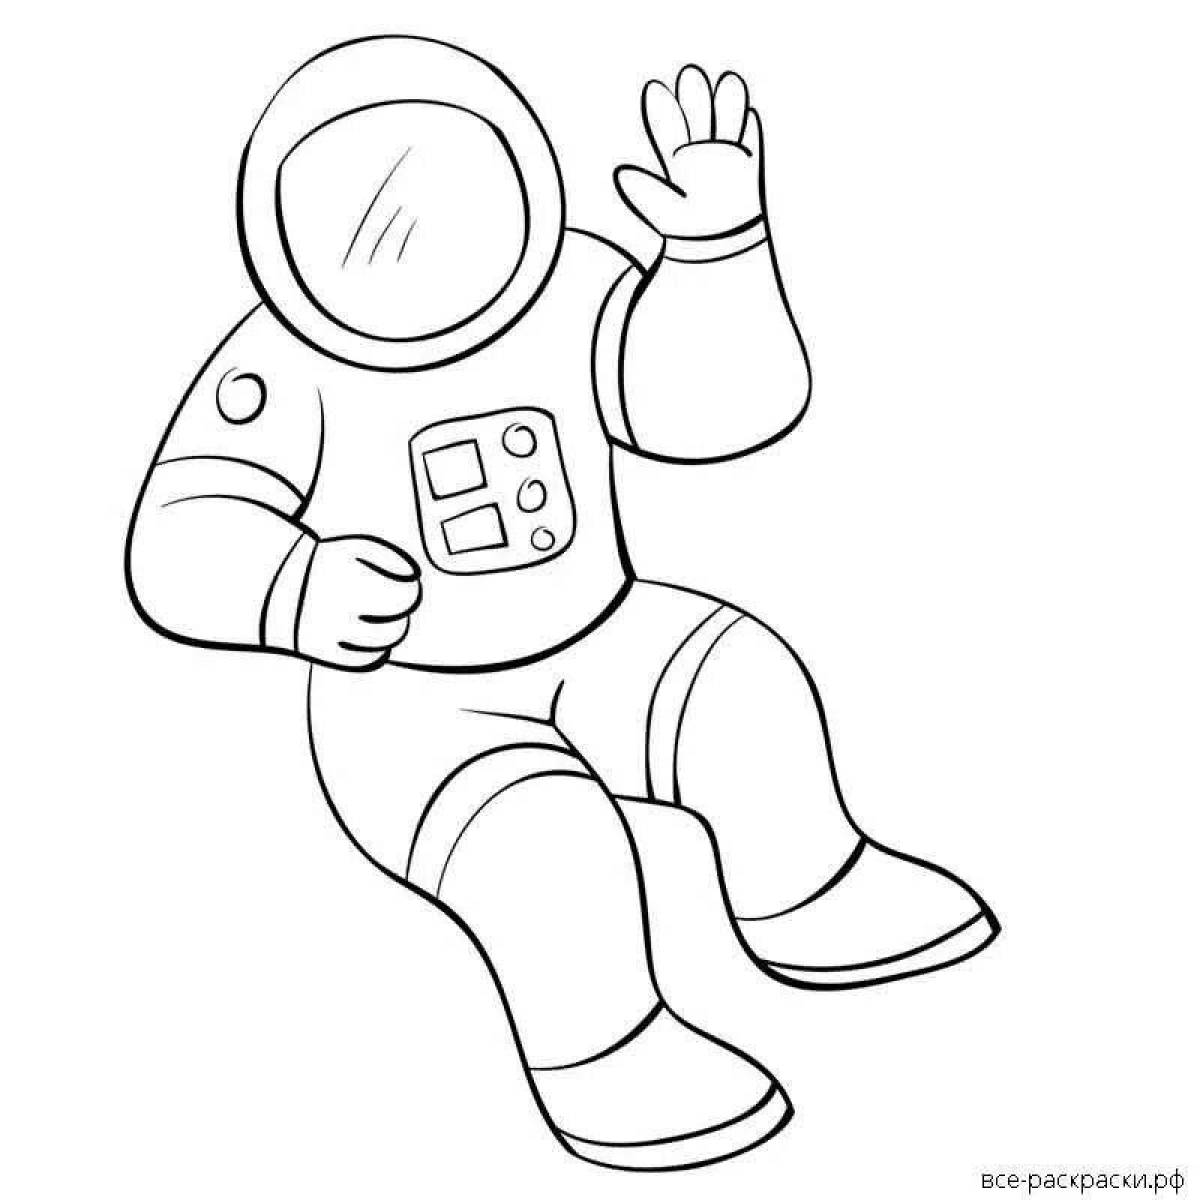 Космонавт шаблон для вырезания распечатать. Космонавт раскраска для детей. Космонавт раскраска для малышей. Космонавт для раскрашивания для детей. Раскраска Космонавта в скафандре для детей.